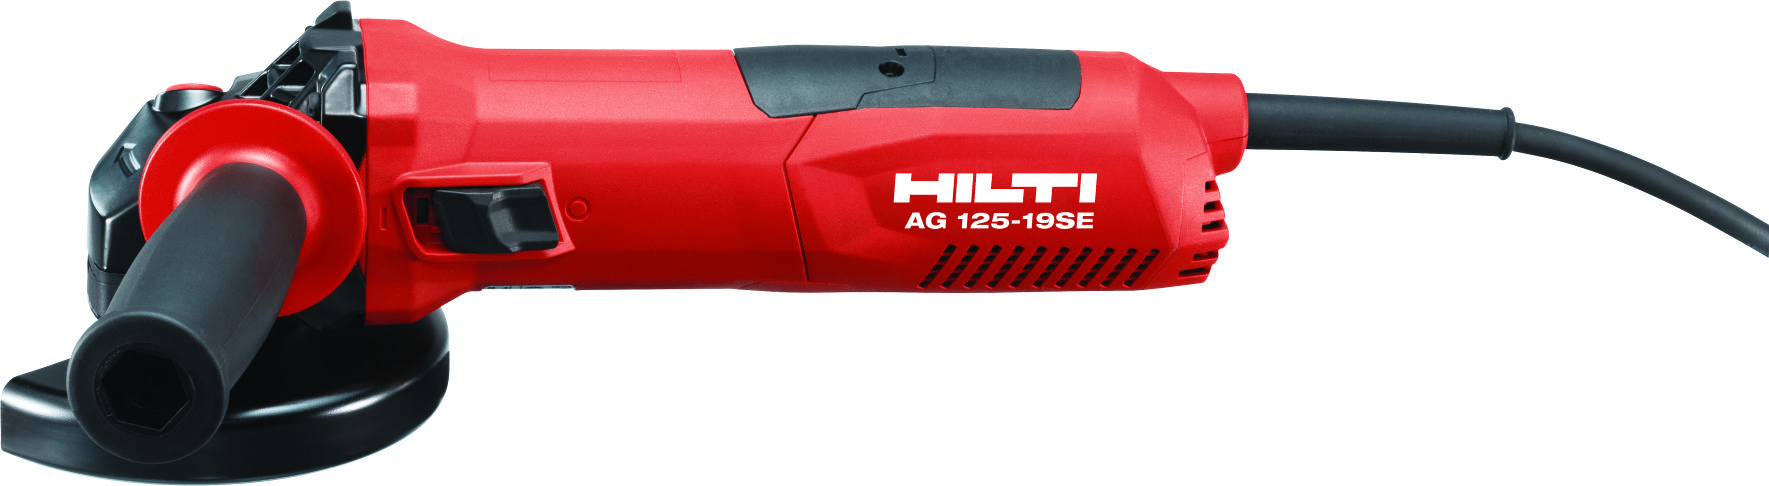 Hilti AG 125-19SE